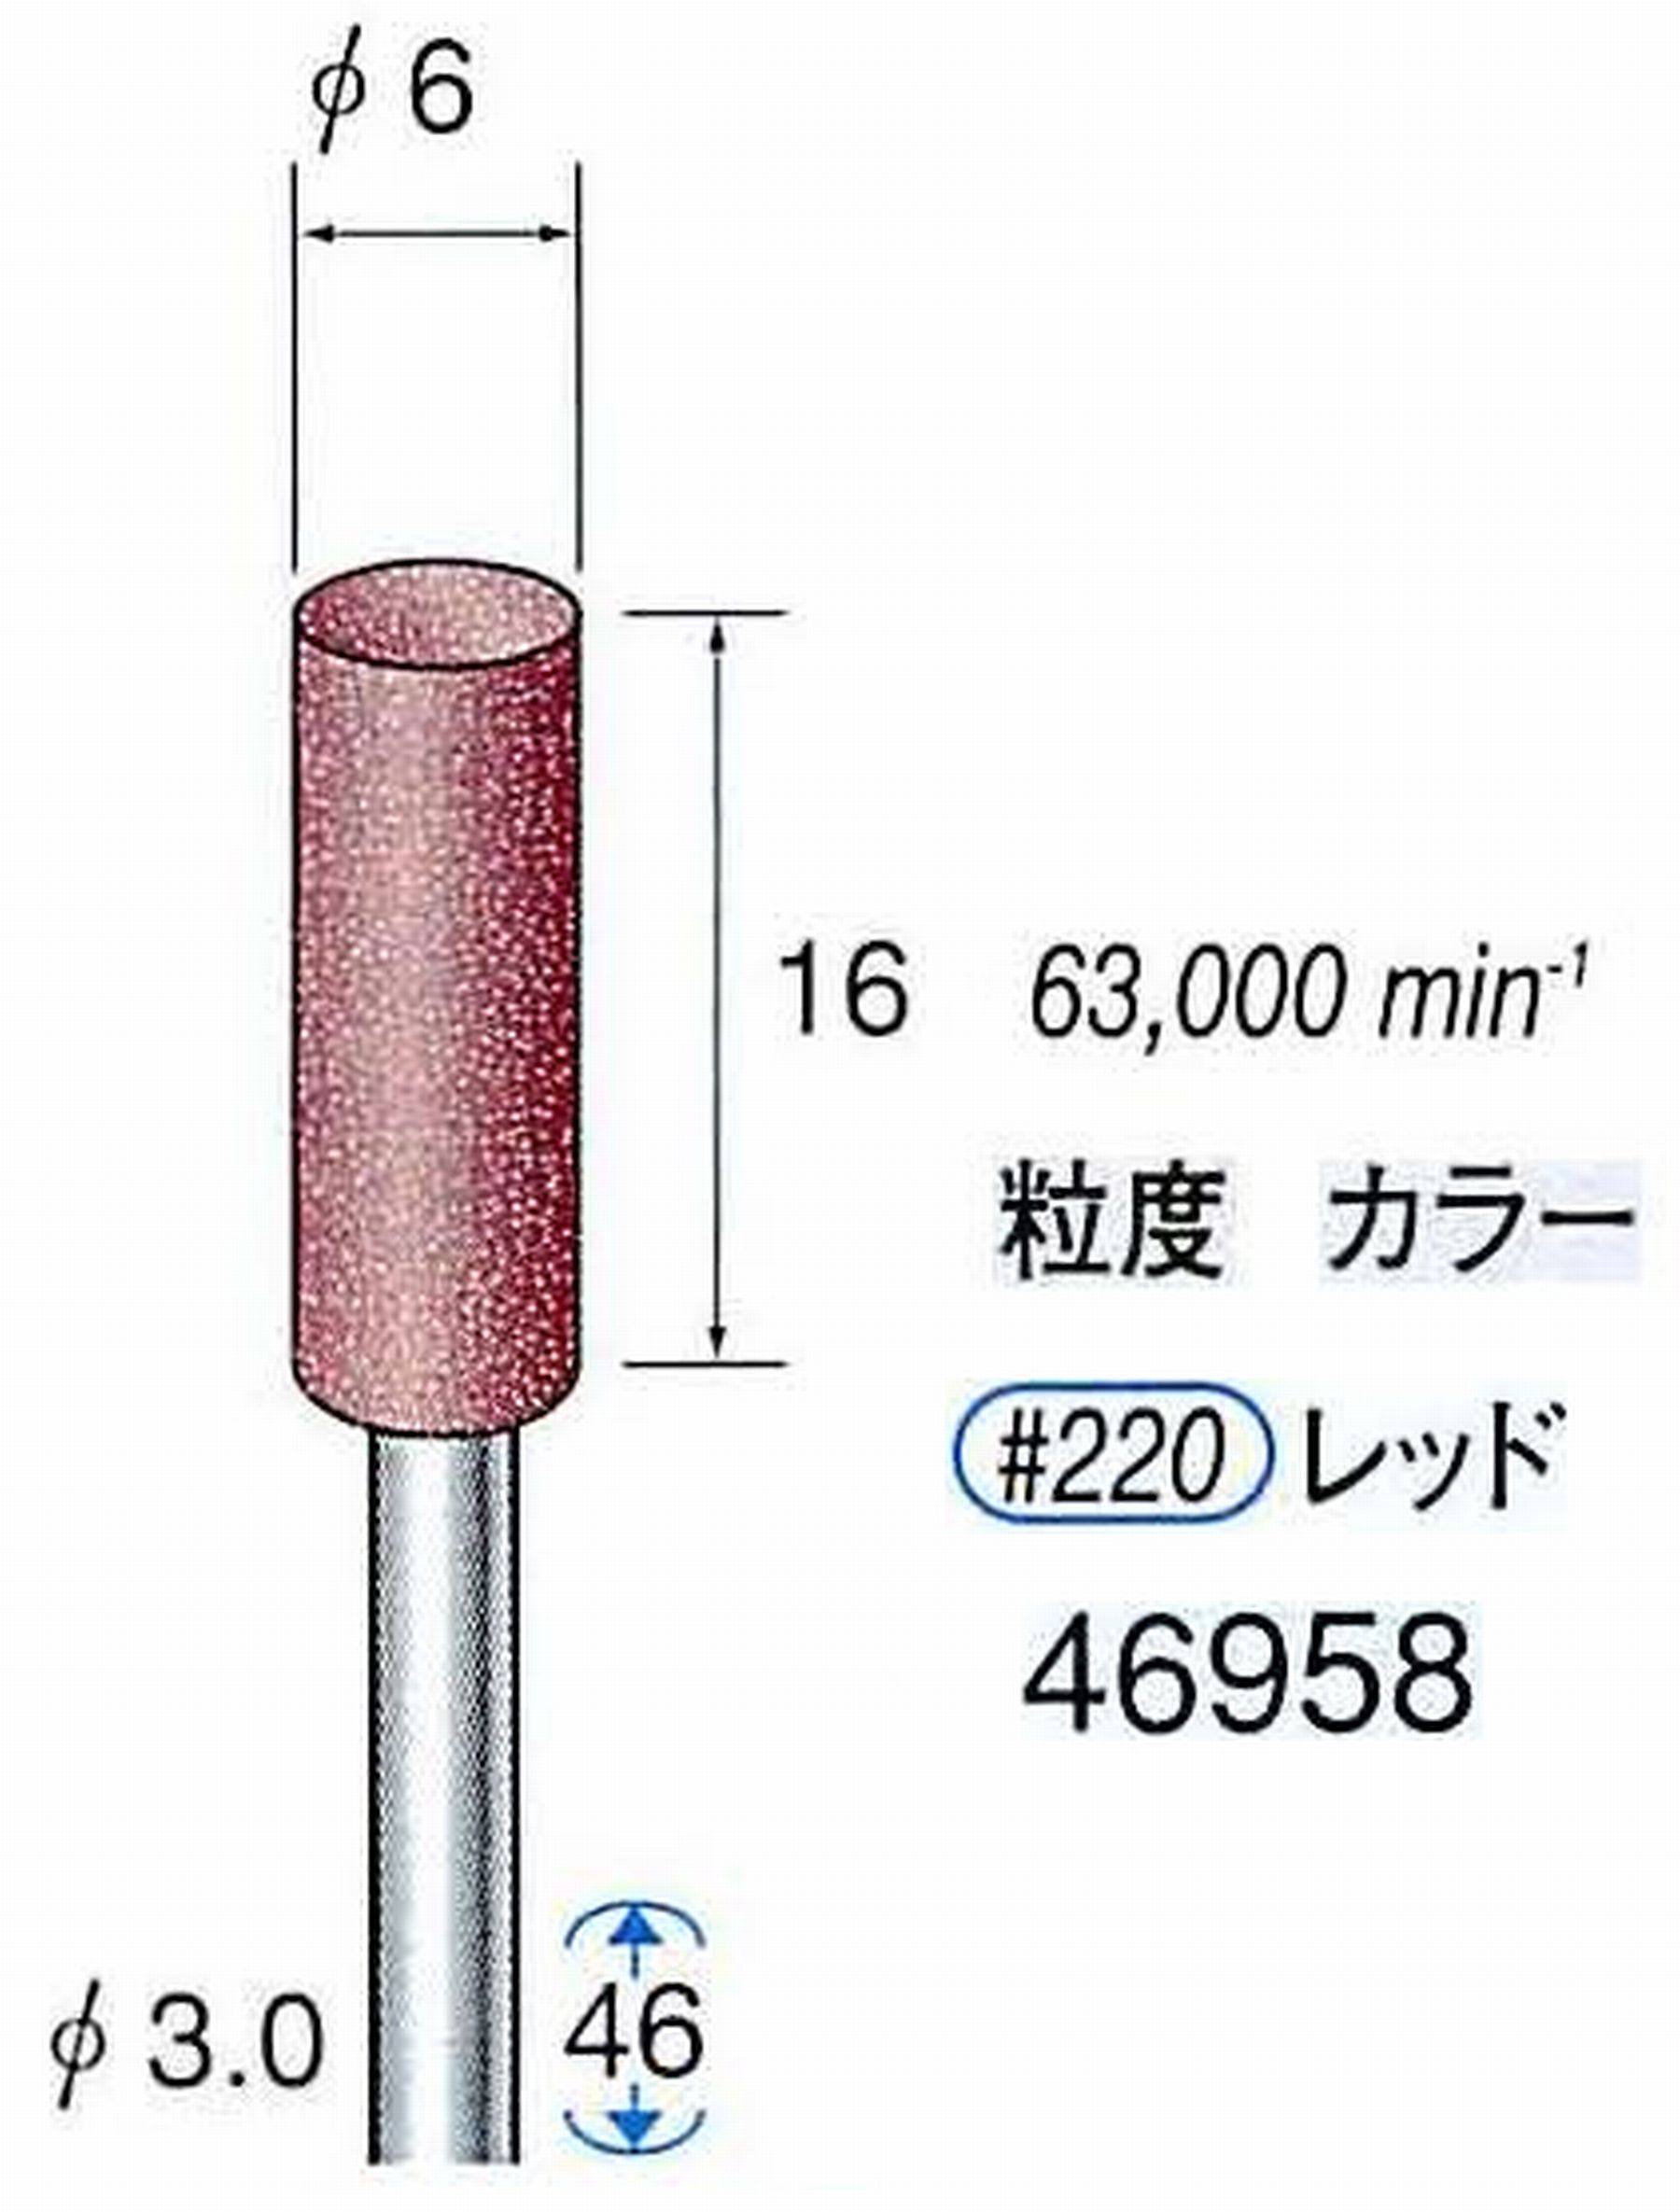 ナカニシ/NAKANISHI 高速回転用スペシャルゴム砥石(WA砥粒)ゴム質の硬さ：ミディアム 軸径(シャンク) φ3.0mm 46958